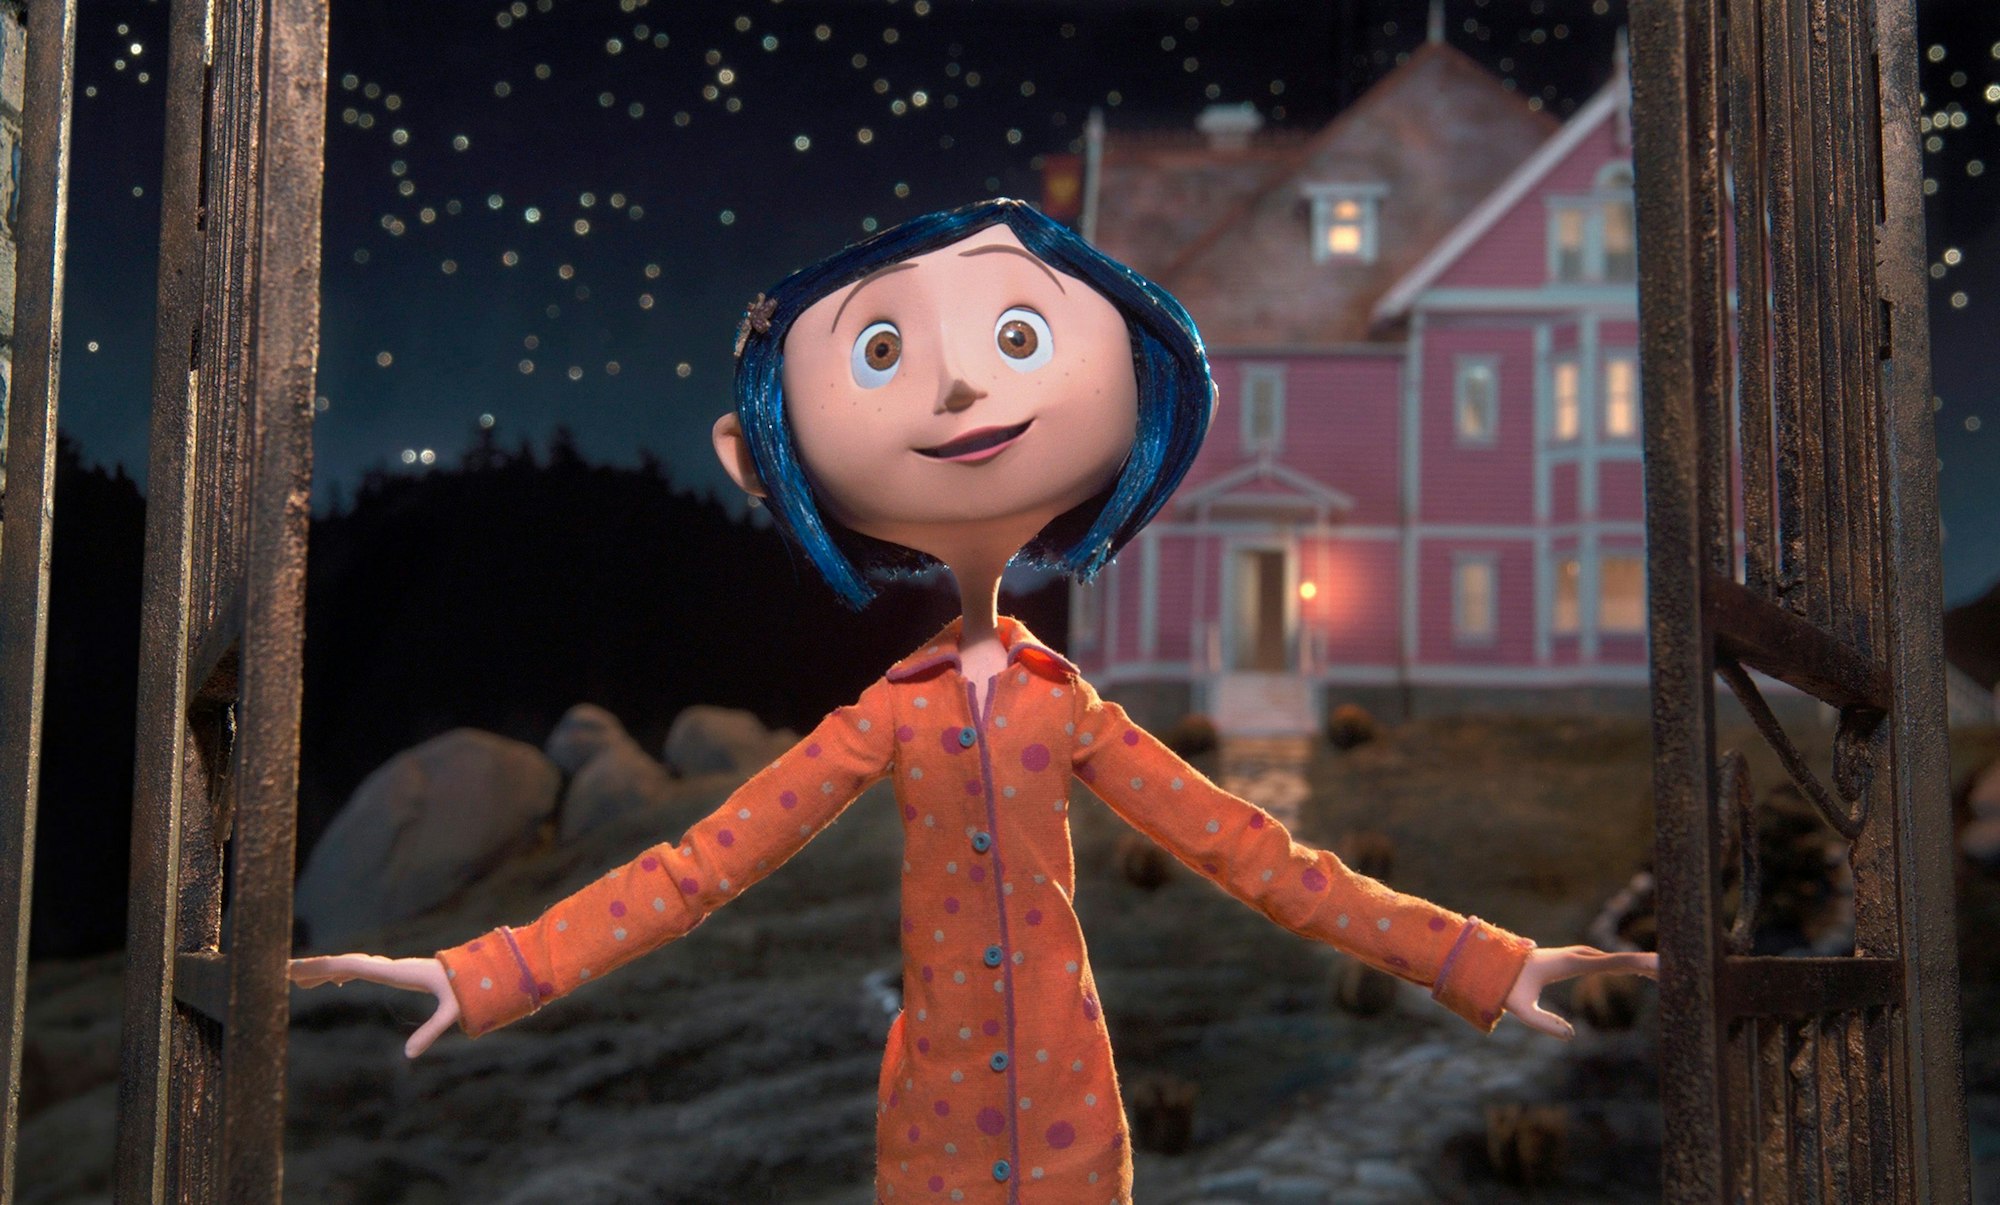 Die Protagonistin Coraline aus dem gleichnamigen Animationsfilm öffnet mitten in der Nacht ein Tor.